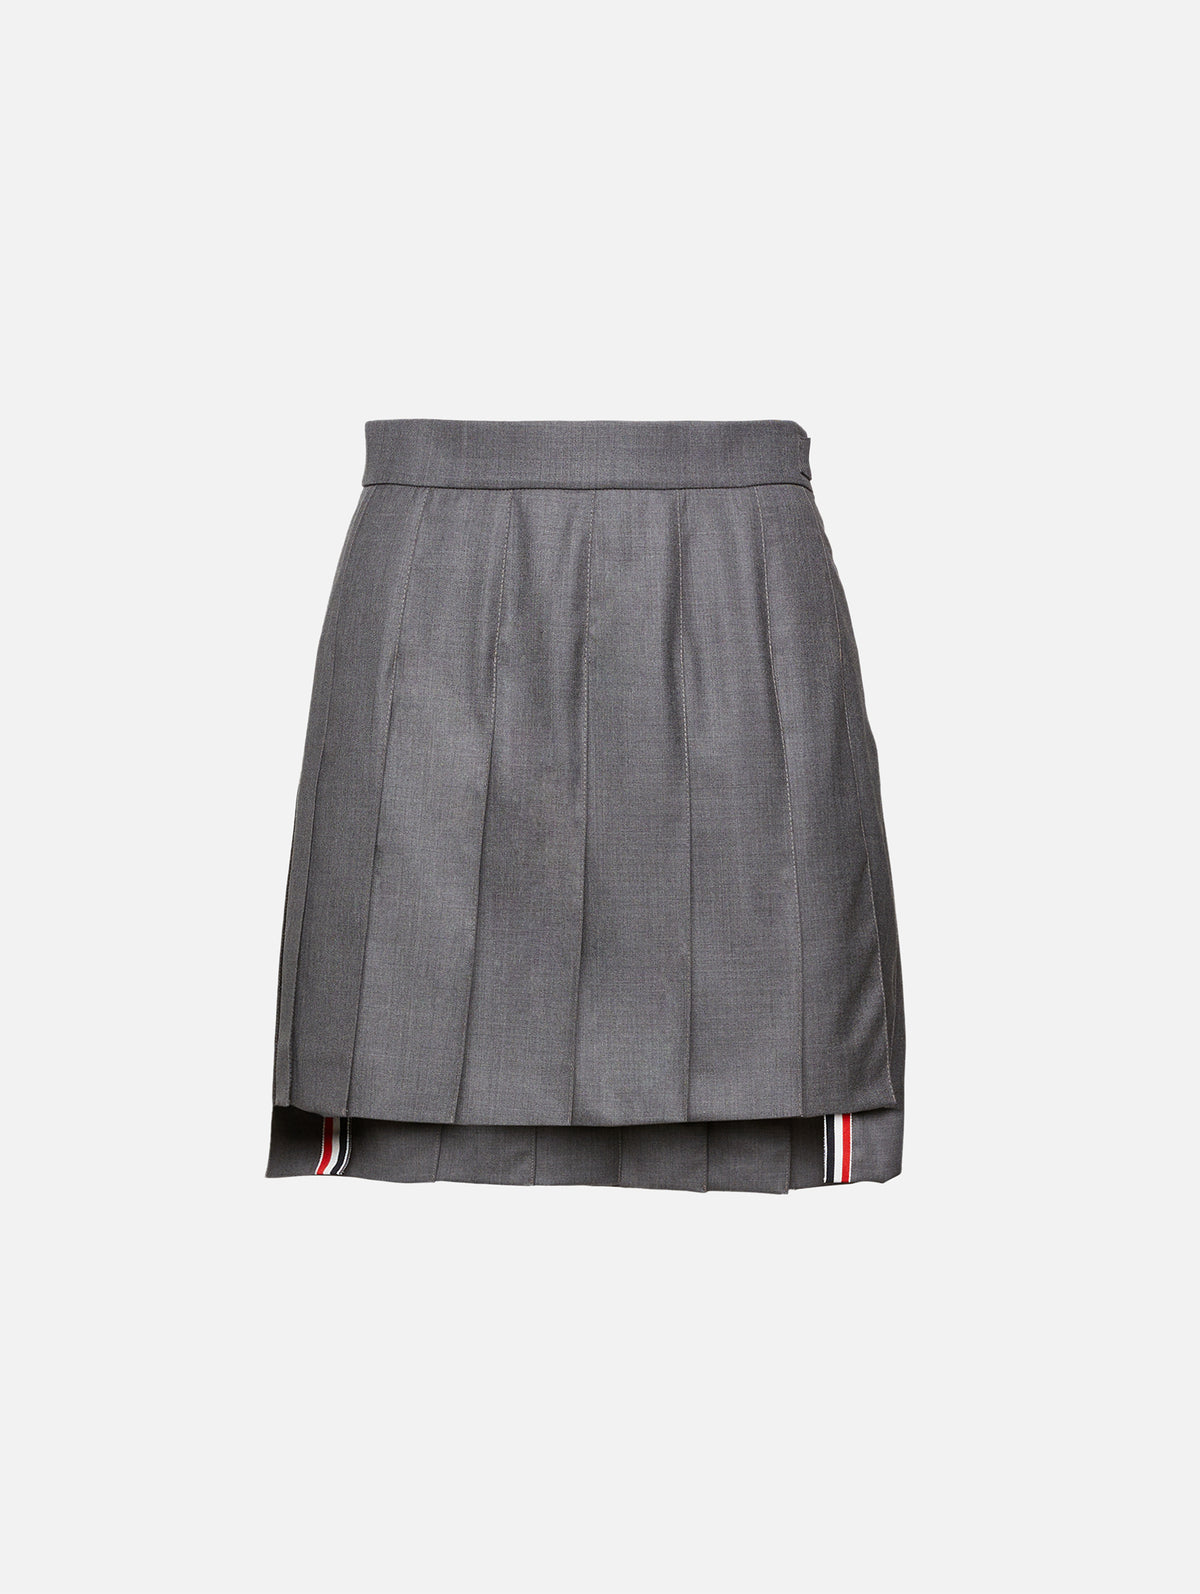 view 1 - Mini Pleat Skirt